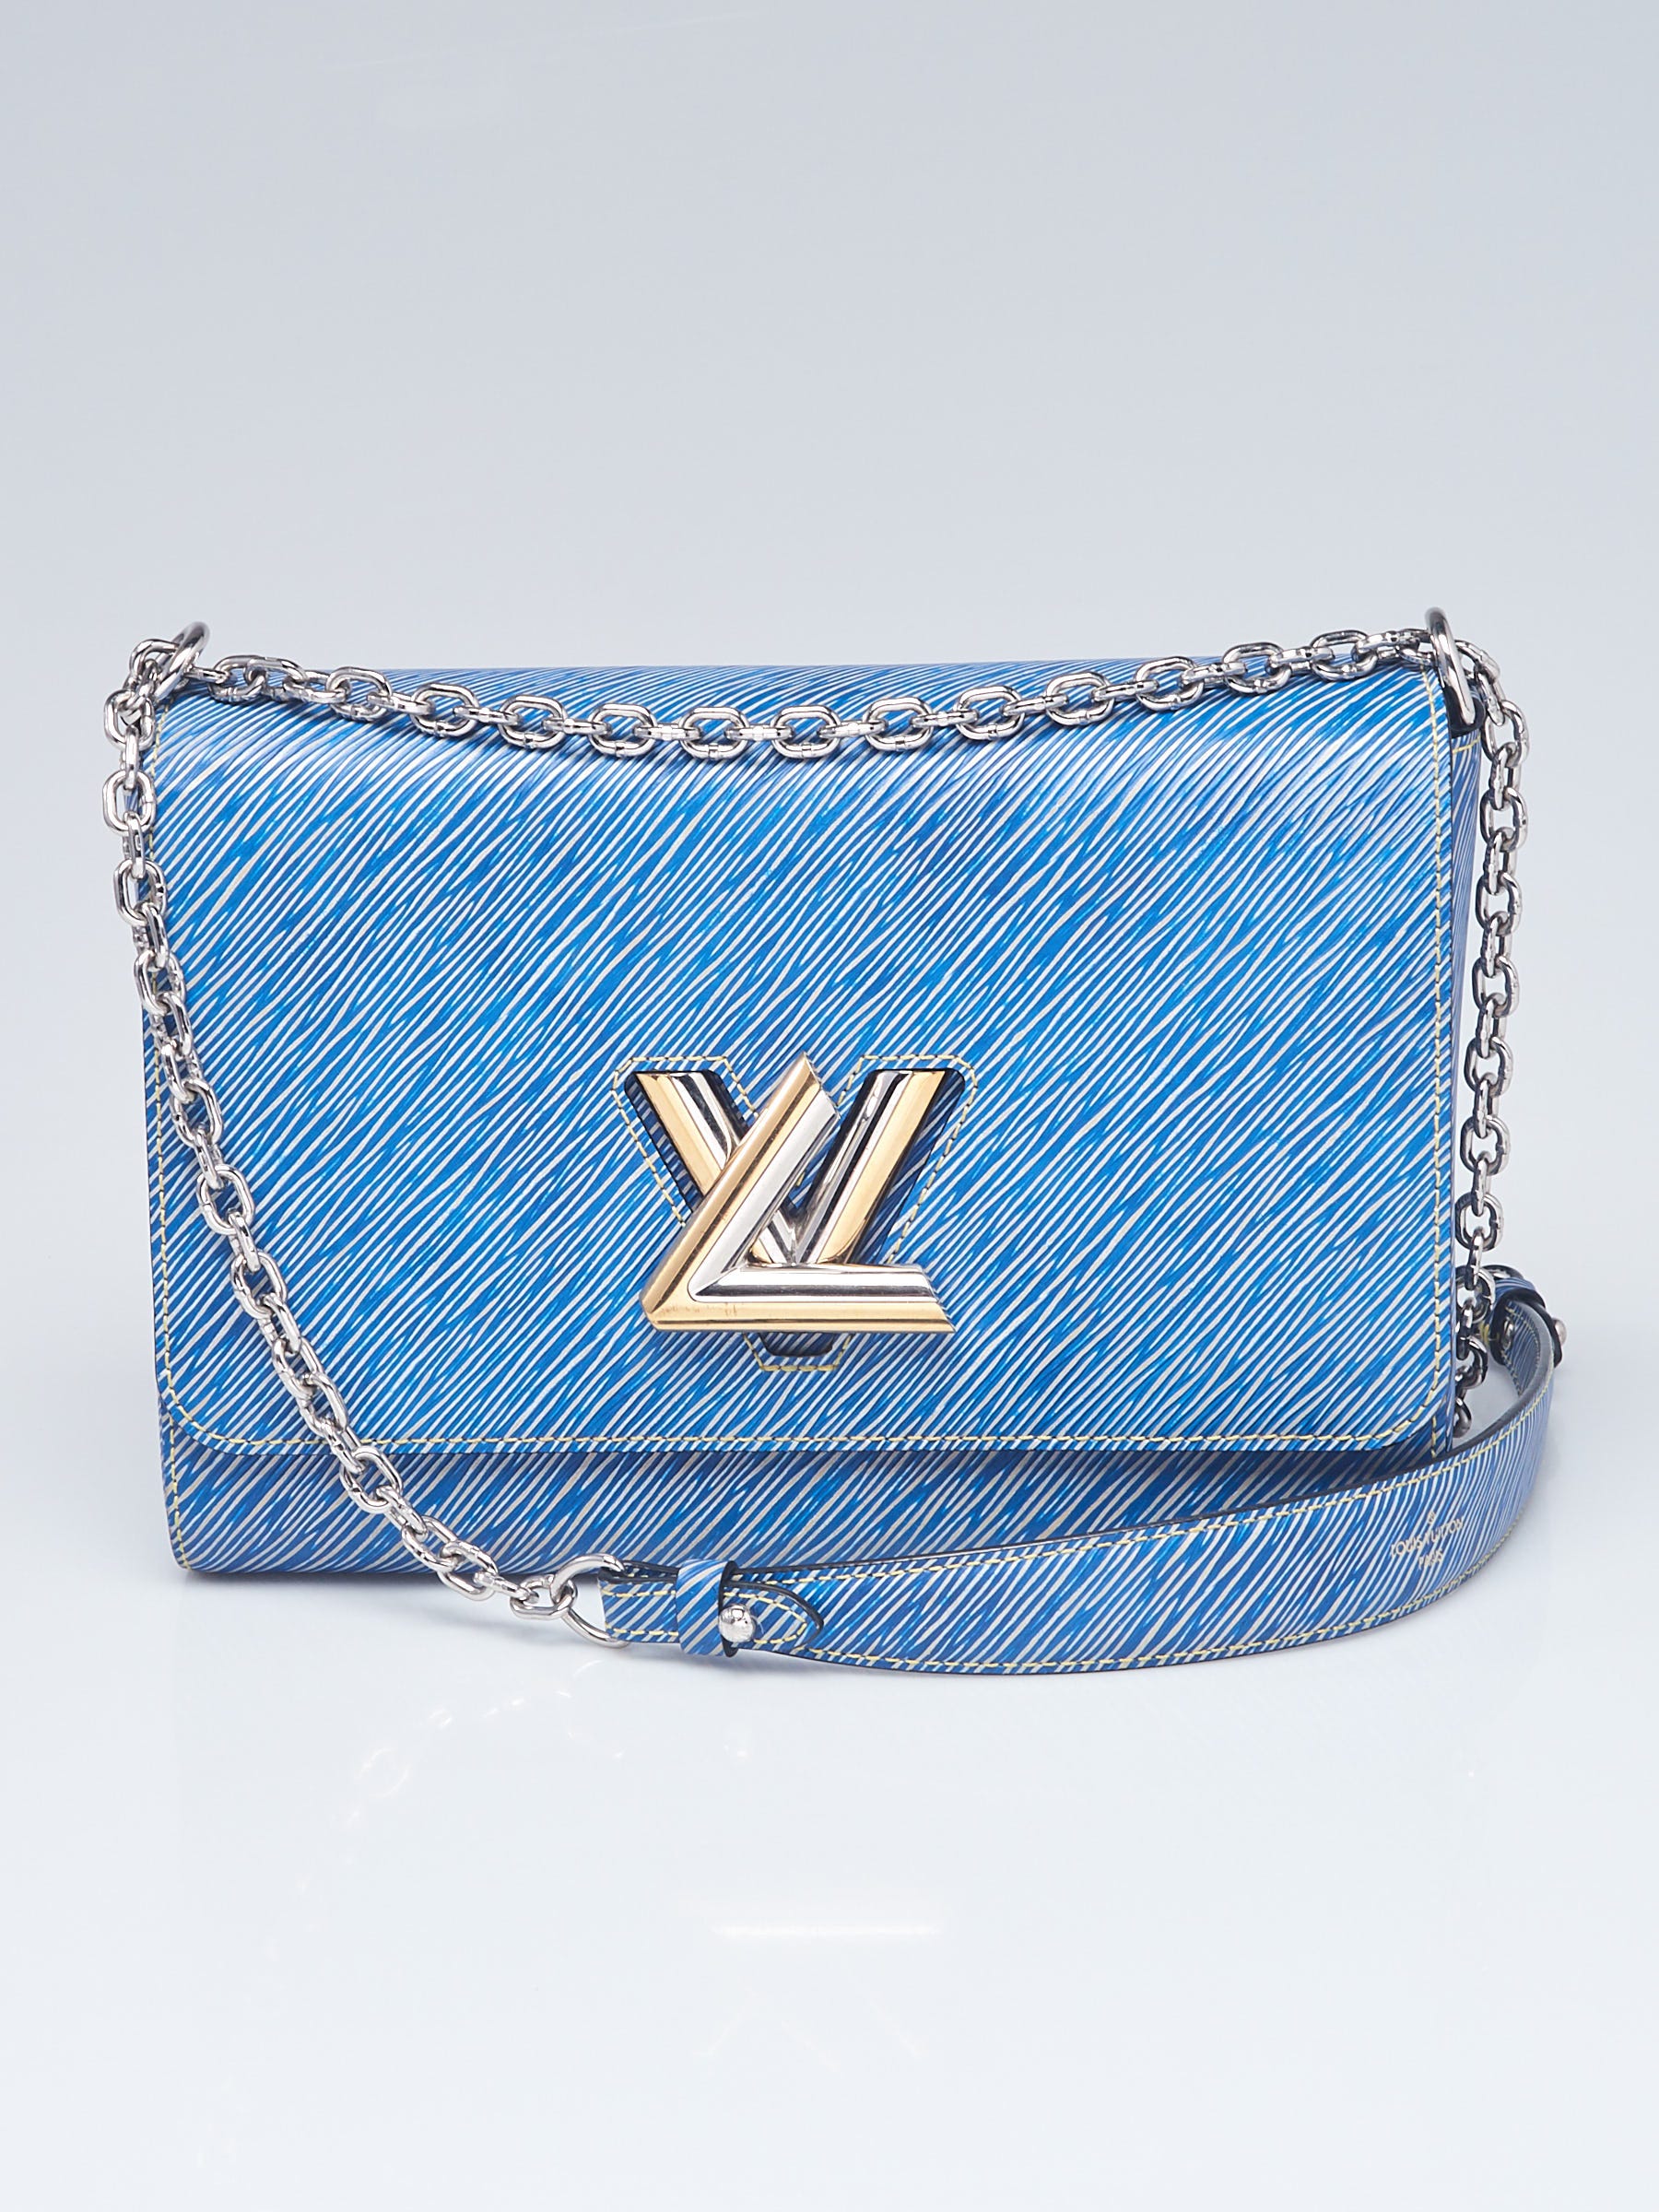 Louis Vuitton Epi Twist GM - Black Shoulder Bags, Handbags